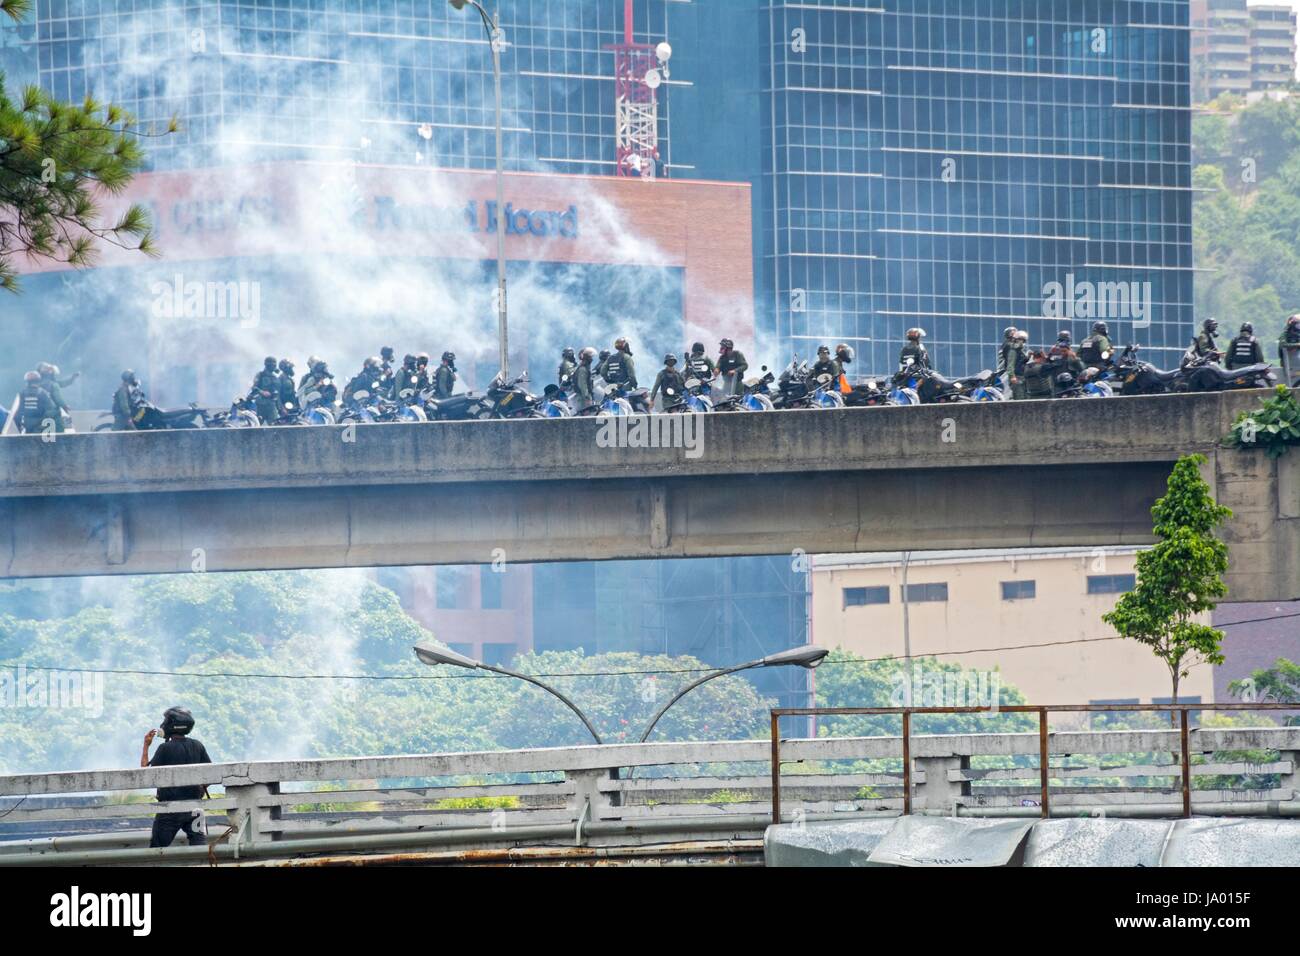 Bolivarianische Nationalgarde, feuert Tränengas und Schrotflinten, zu den Demonstranten marschieren friedlich. Präsidium der demokratischen Einheit (Schlamm) mobilisiert Mobilfunktarife Stockfoto